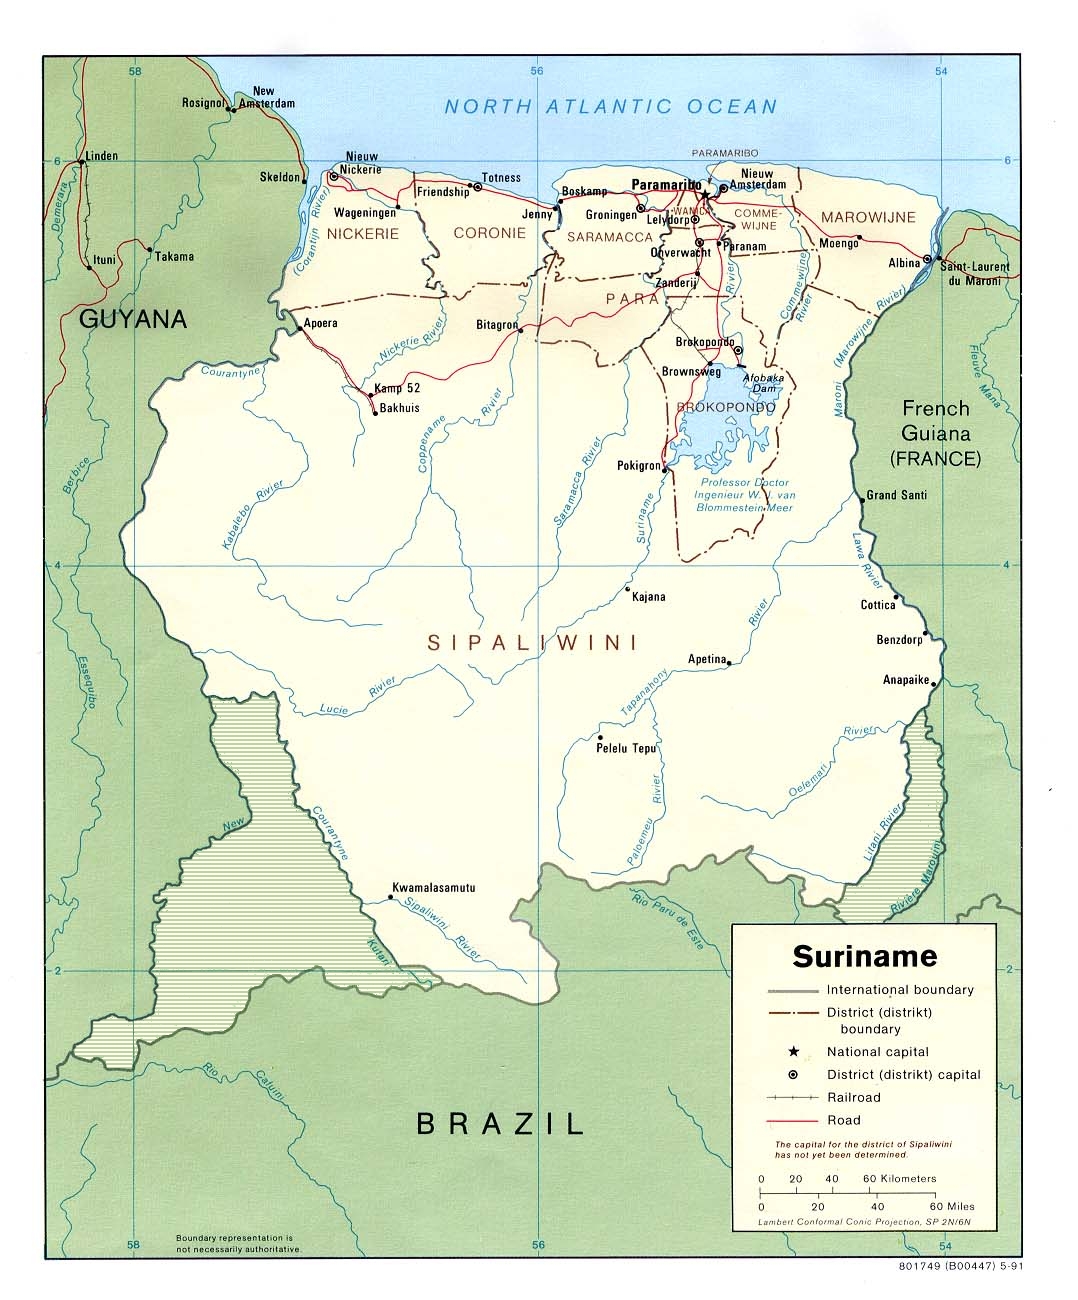 Suriname1991_Karte_umstrittene_Gebiete.jpg